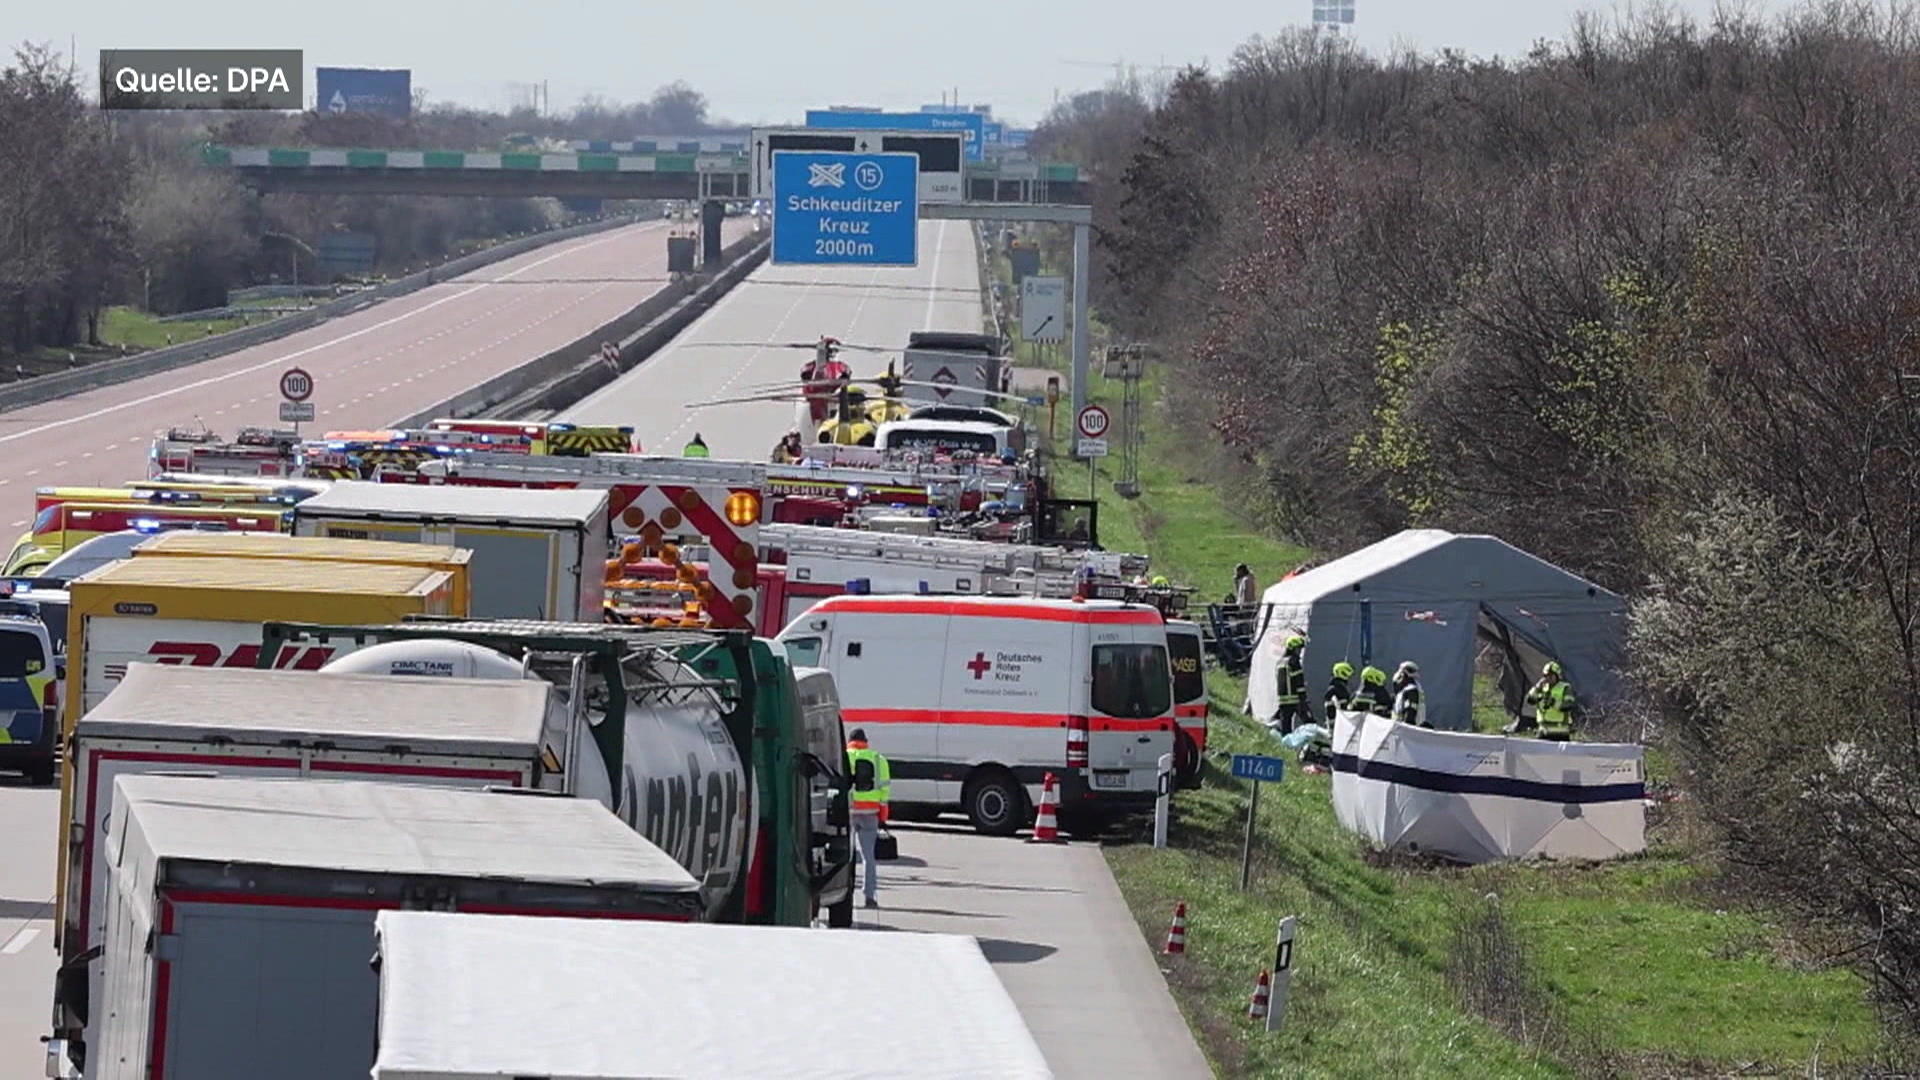 Poważny wypadek autobusu Flex na autostradzie, co najmniej pięć osób nie żyje!